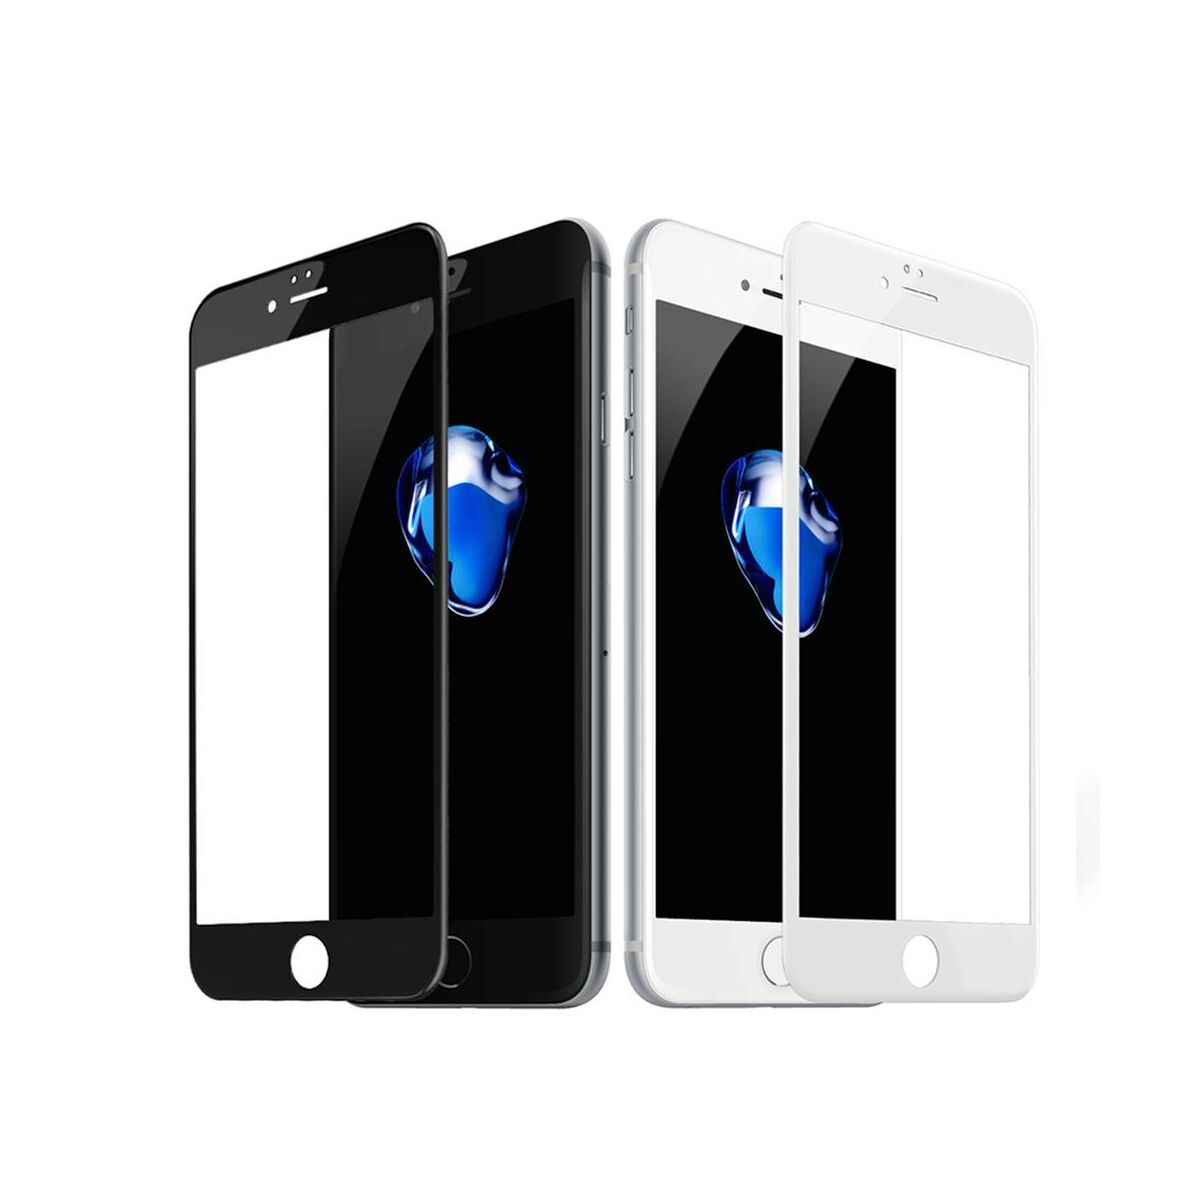 Kép 3/10 - Baseus iPhone 6/6s Plus 0.3 mm, teljes felületre edzett üveg kijelzővédő fólia, fekete (SGAPIPH6SP-B3D01)